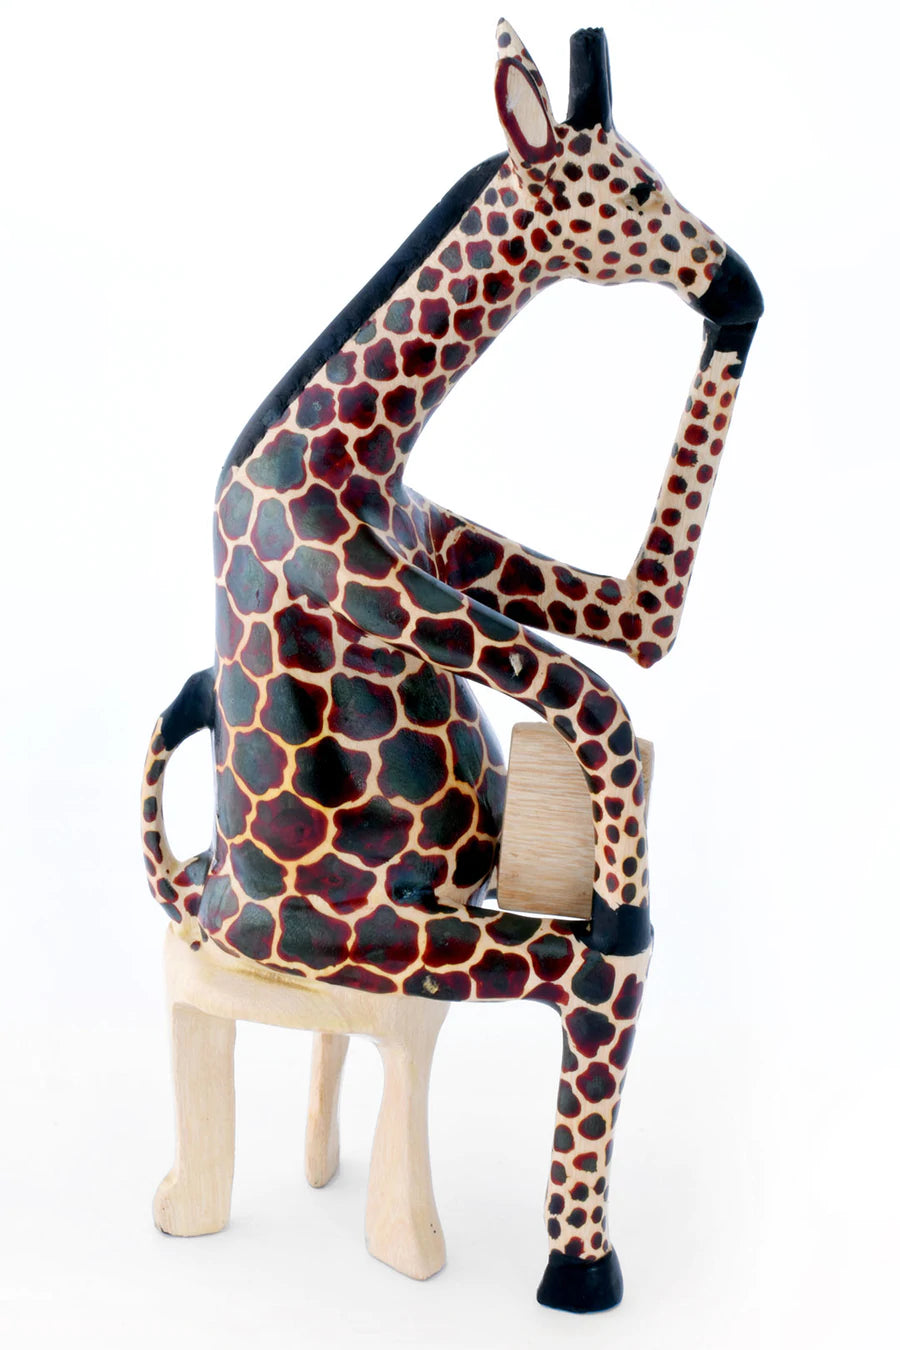 Hand-Painted Wood Reading Giraffe Teacher Sculptures